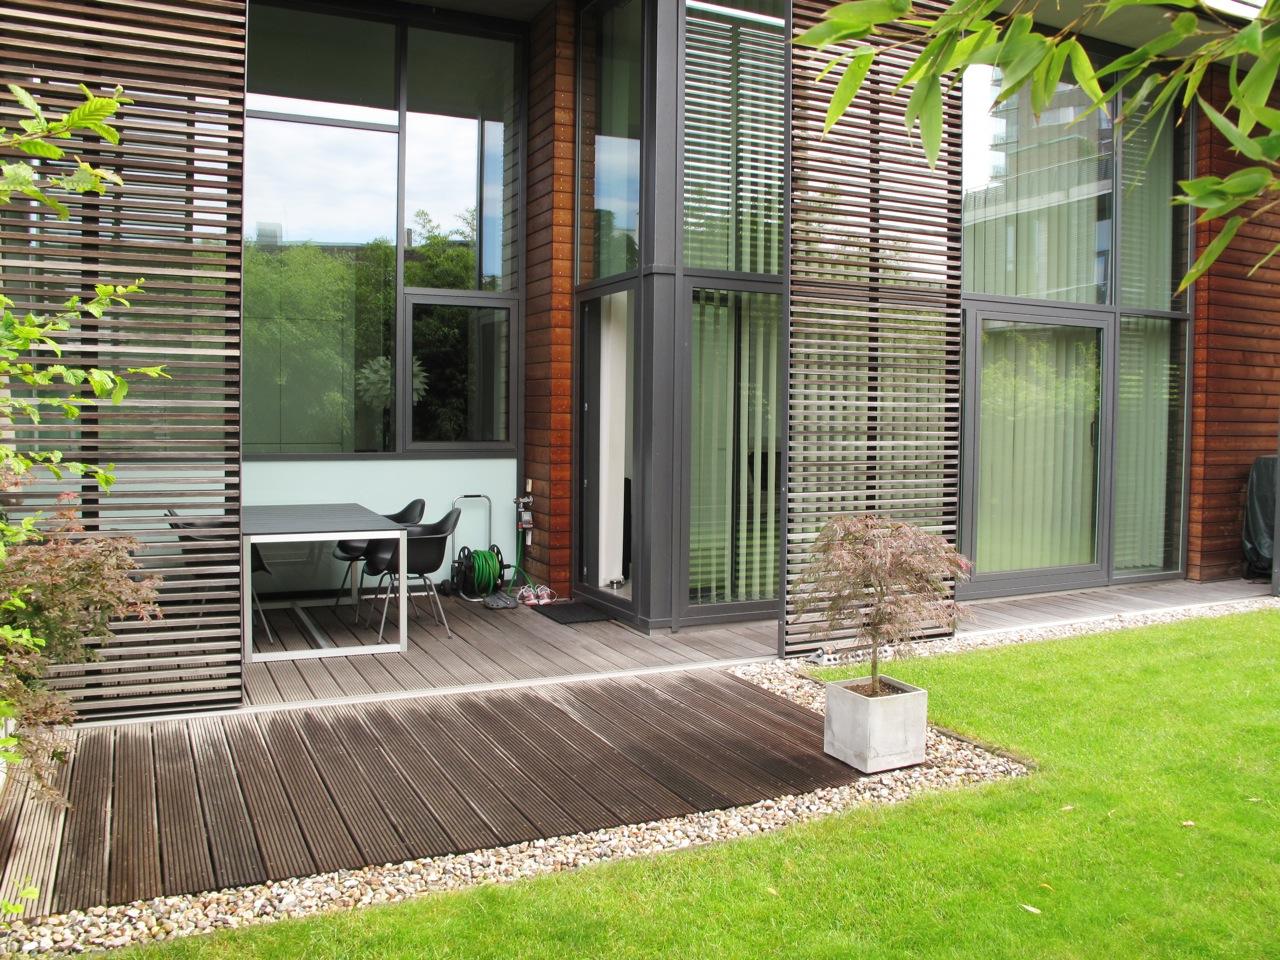 Terrassenboden aus Holz #holzterrasse #neubau #terrassenboden ©scout for location